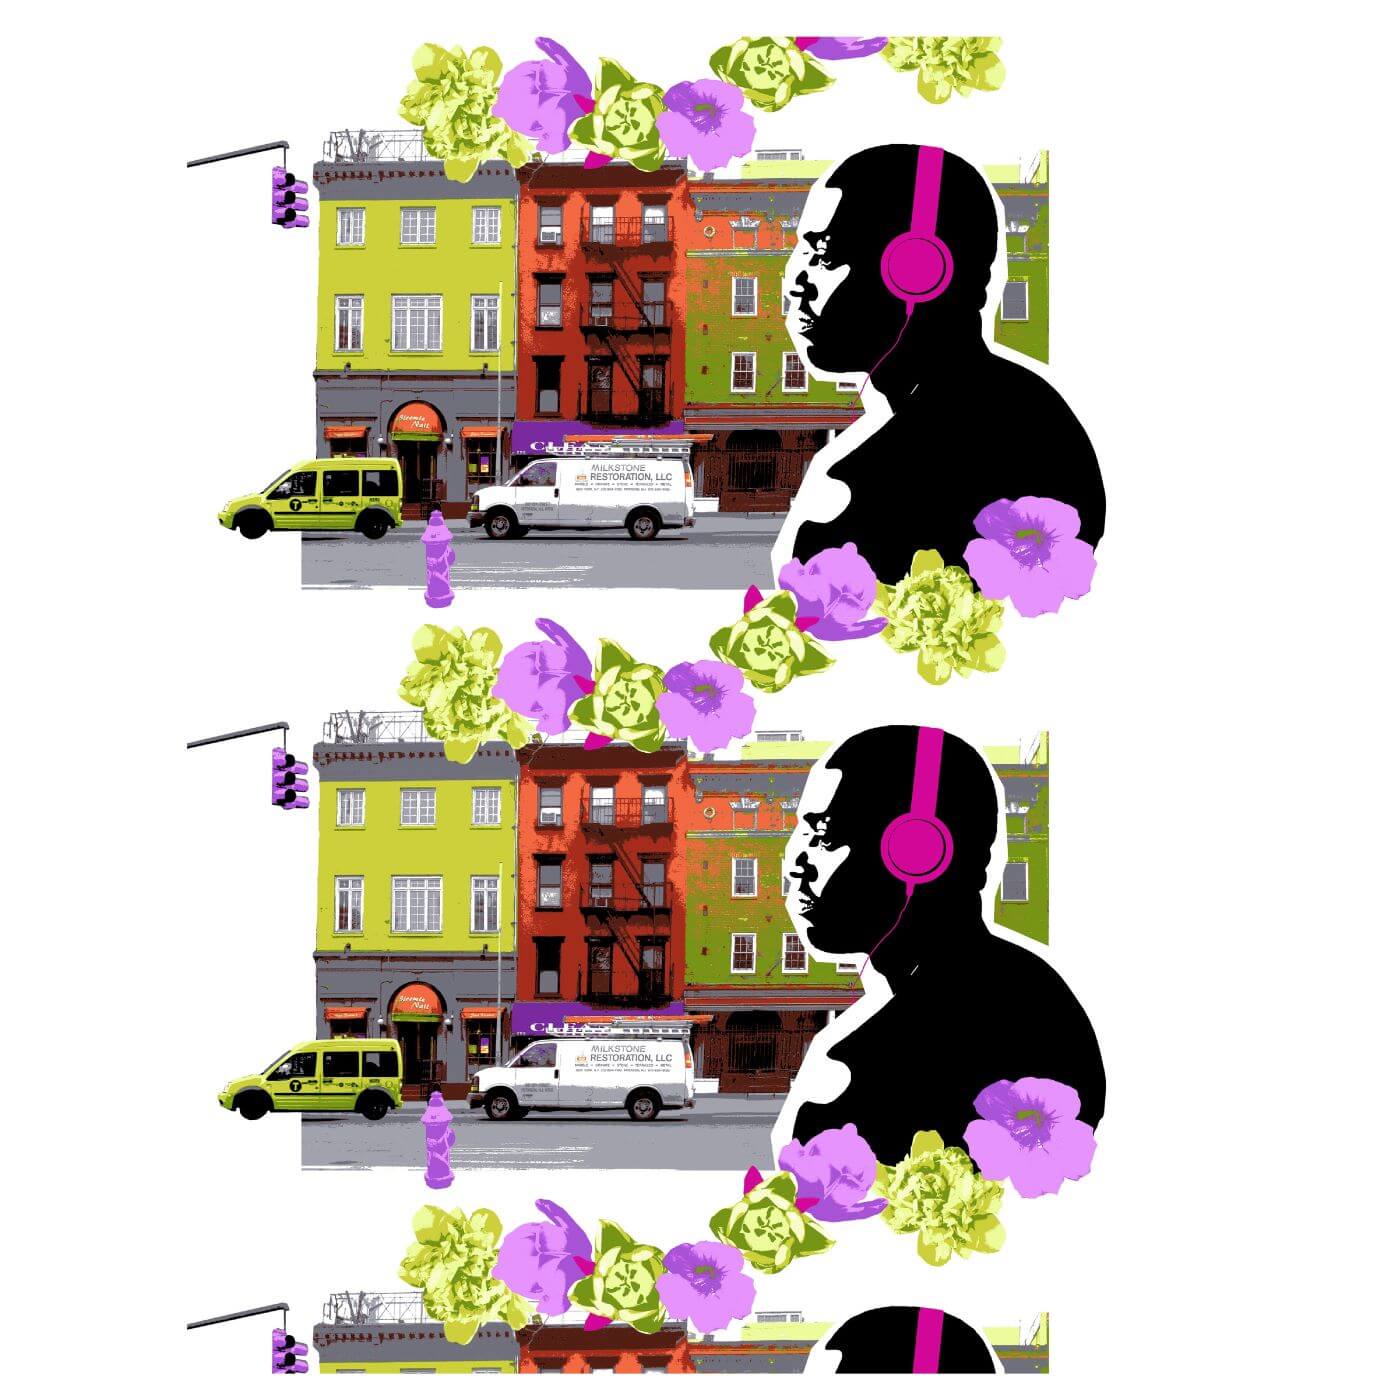 Zasłona młodzieżowa HEATWAVE. Wzór gotowej kolorowej zasłony z ulicą Nowego Jorku, różami i czarną postacią mężczyzny słuchającego muzyki w słuchawkach. Nowoczesne skandynawskie wzornictwo